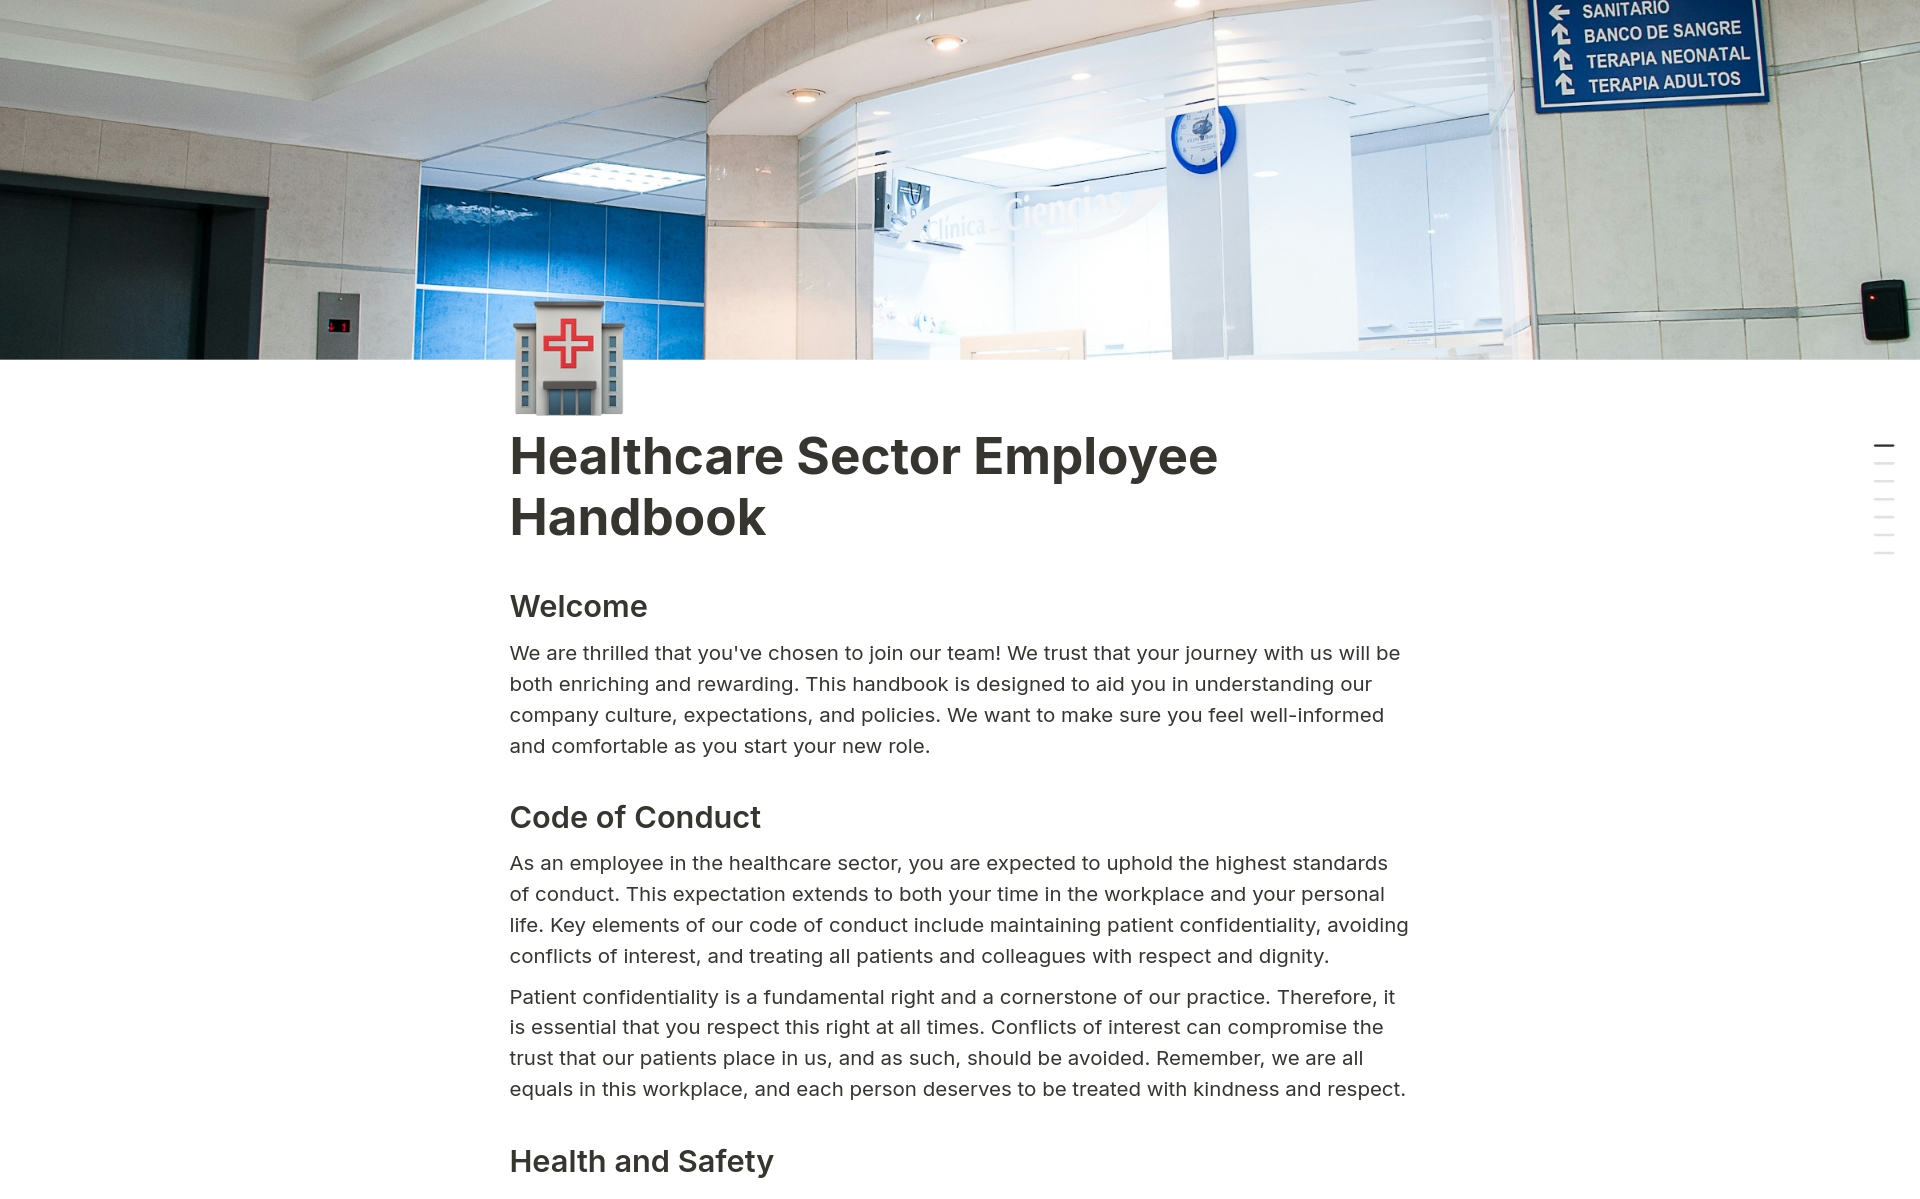 Uma prévia do modelo para Healthcare Sector Employee Handbook